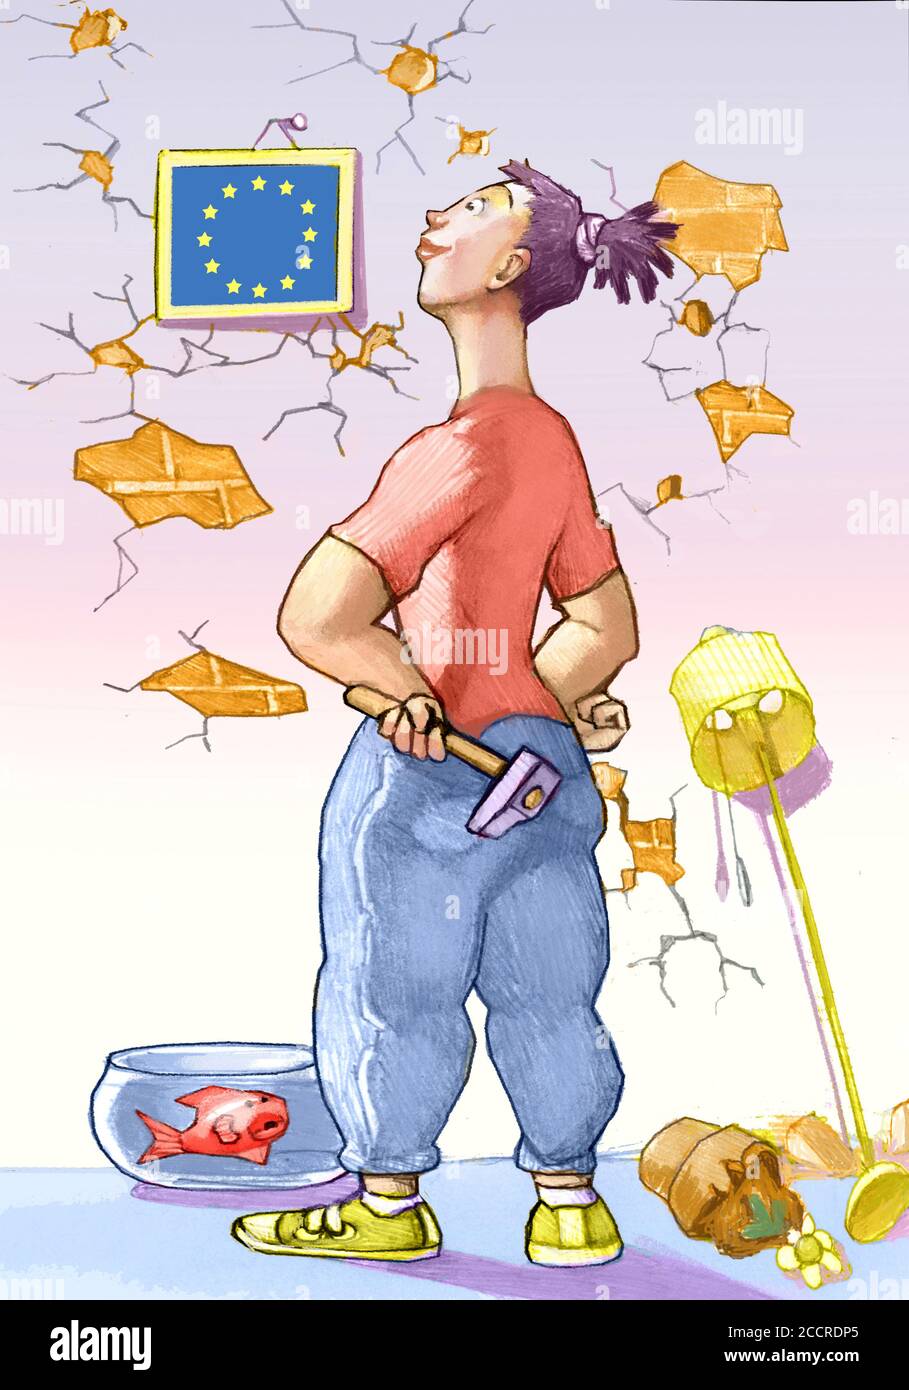 chica parece feliz el cuadro de la bandera europea que tiene abrazar la pared es destruida por la metáfora de los intentos la dificultad de construir europa Foto de stock